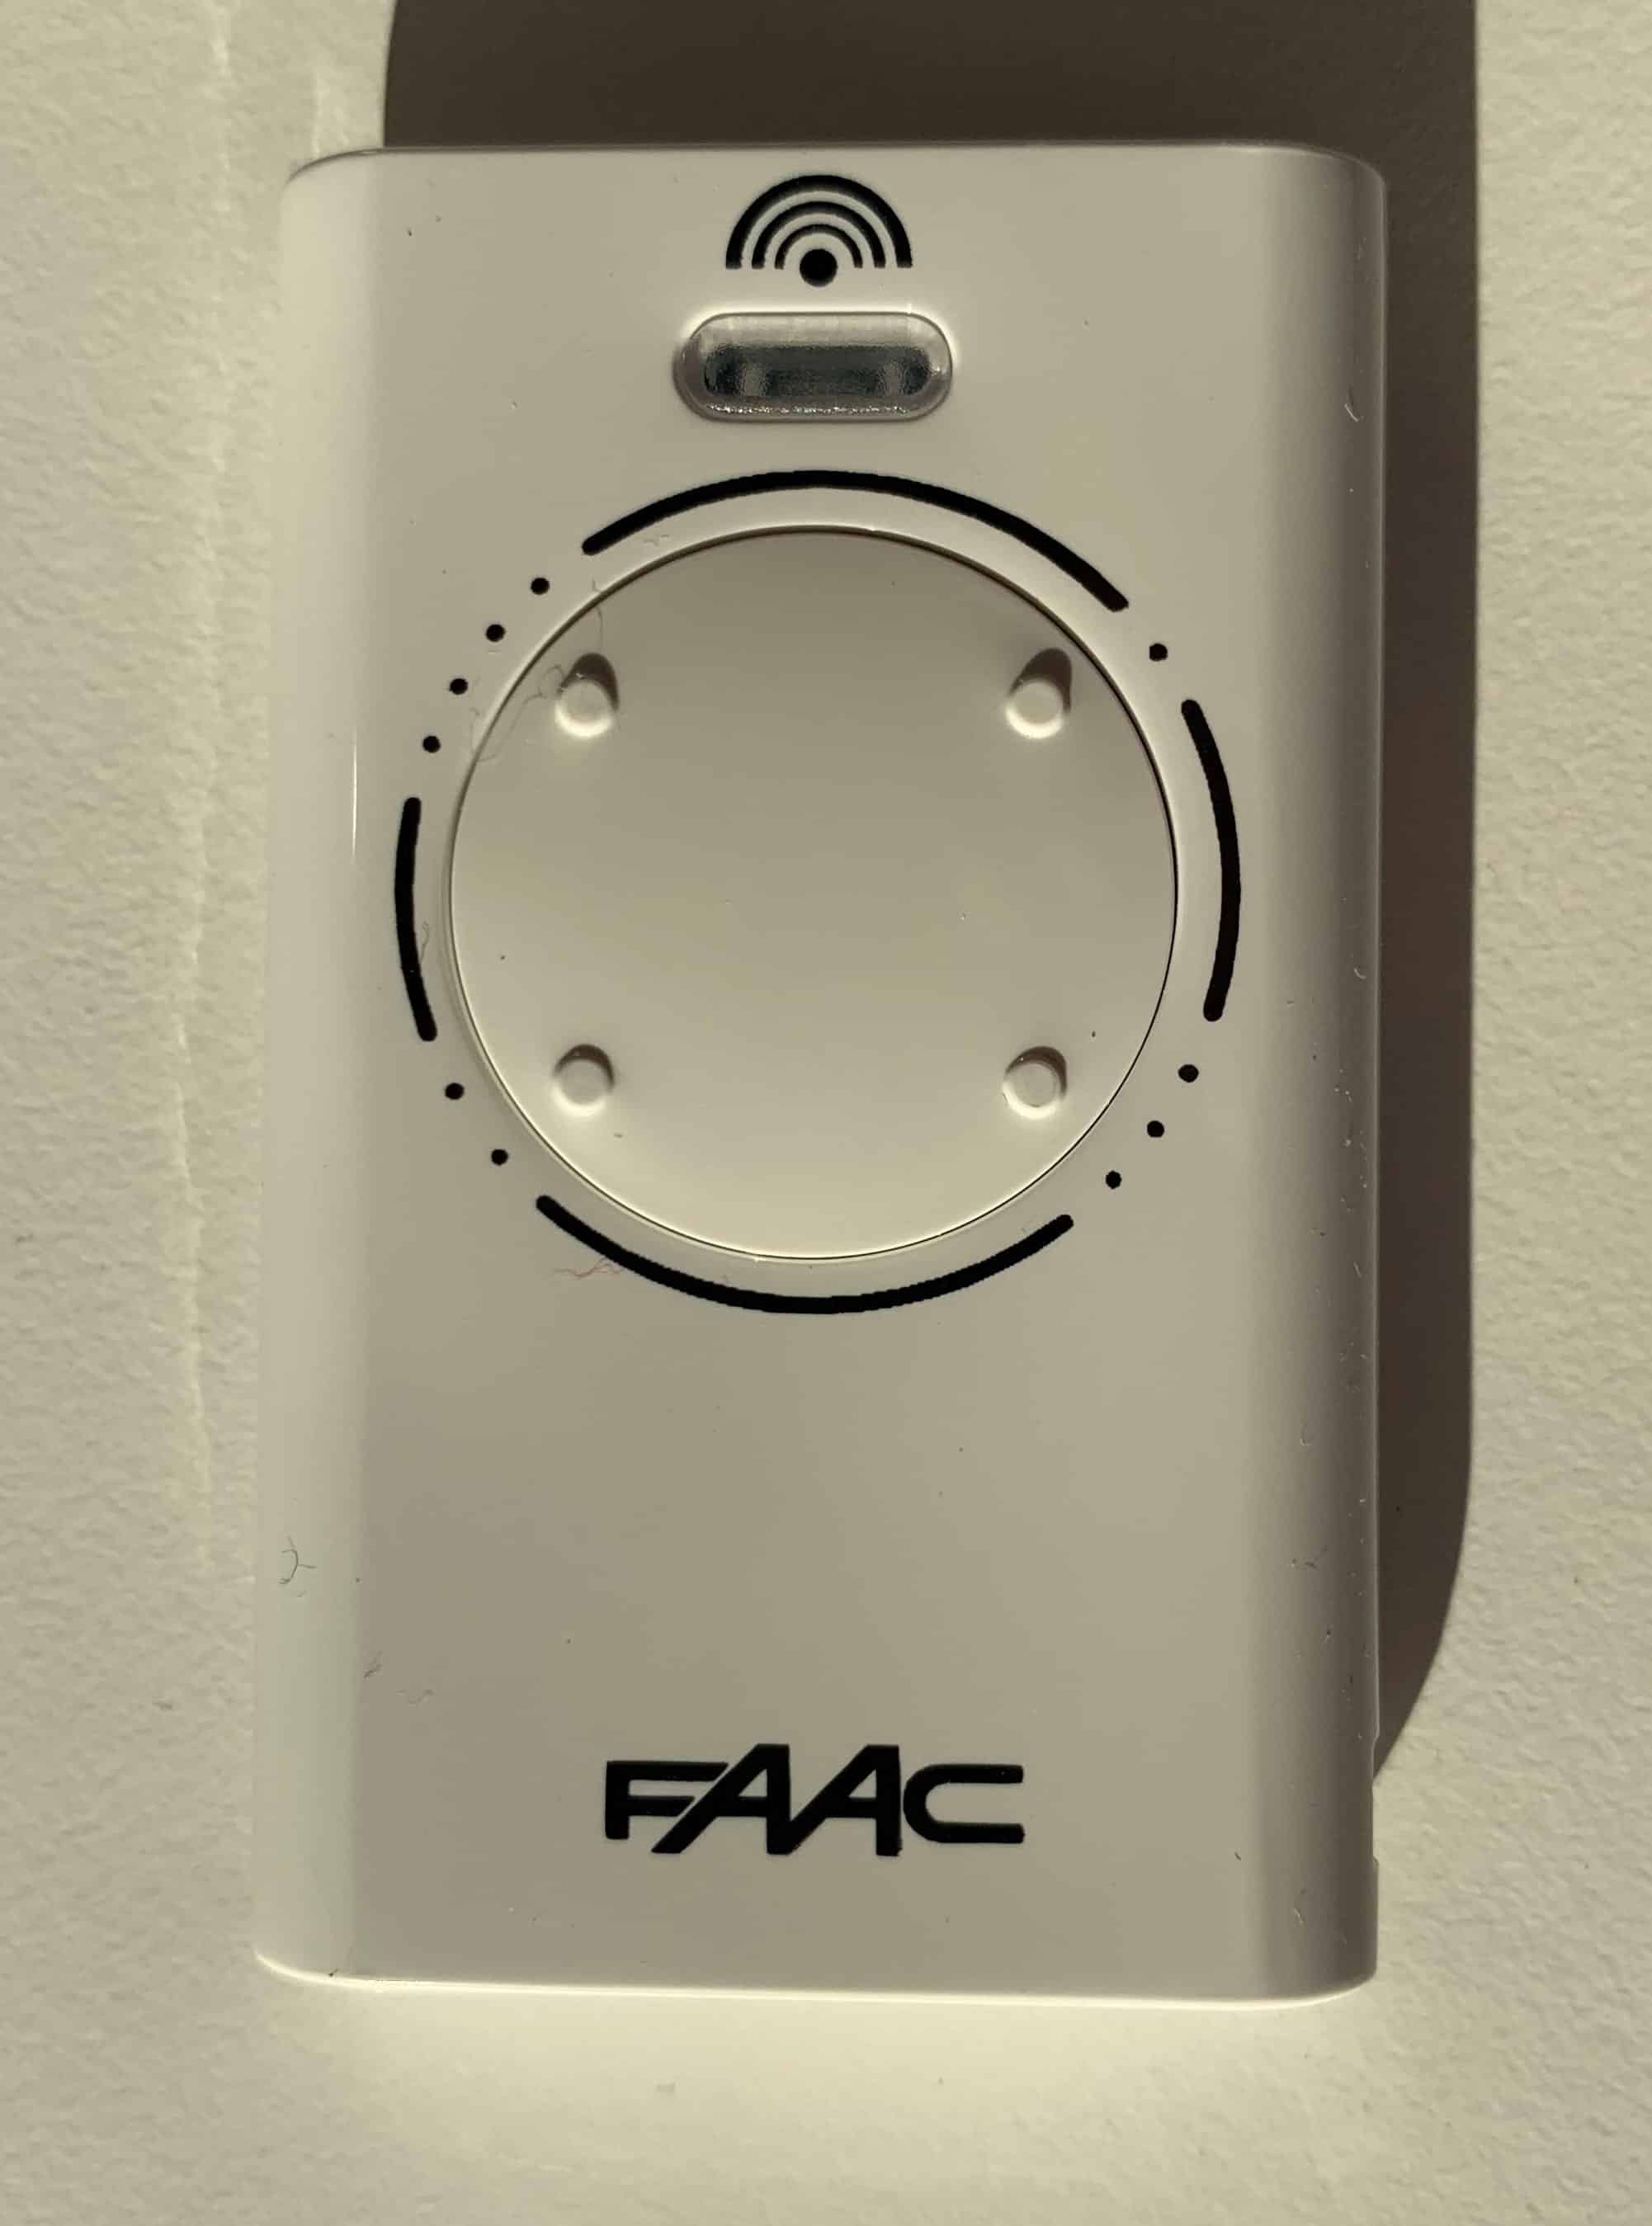 Comment réparer une télécommande FAAC 